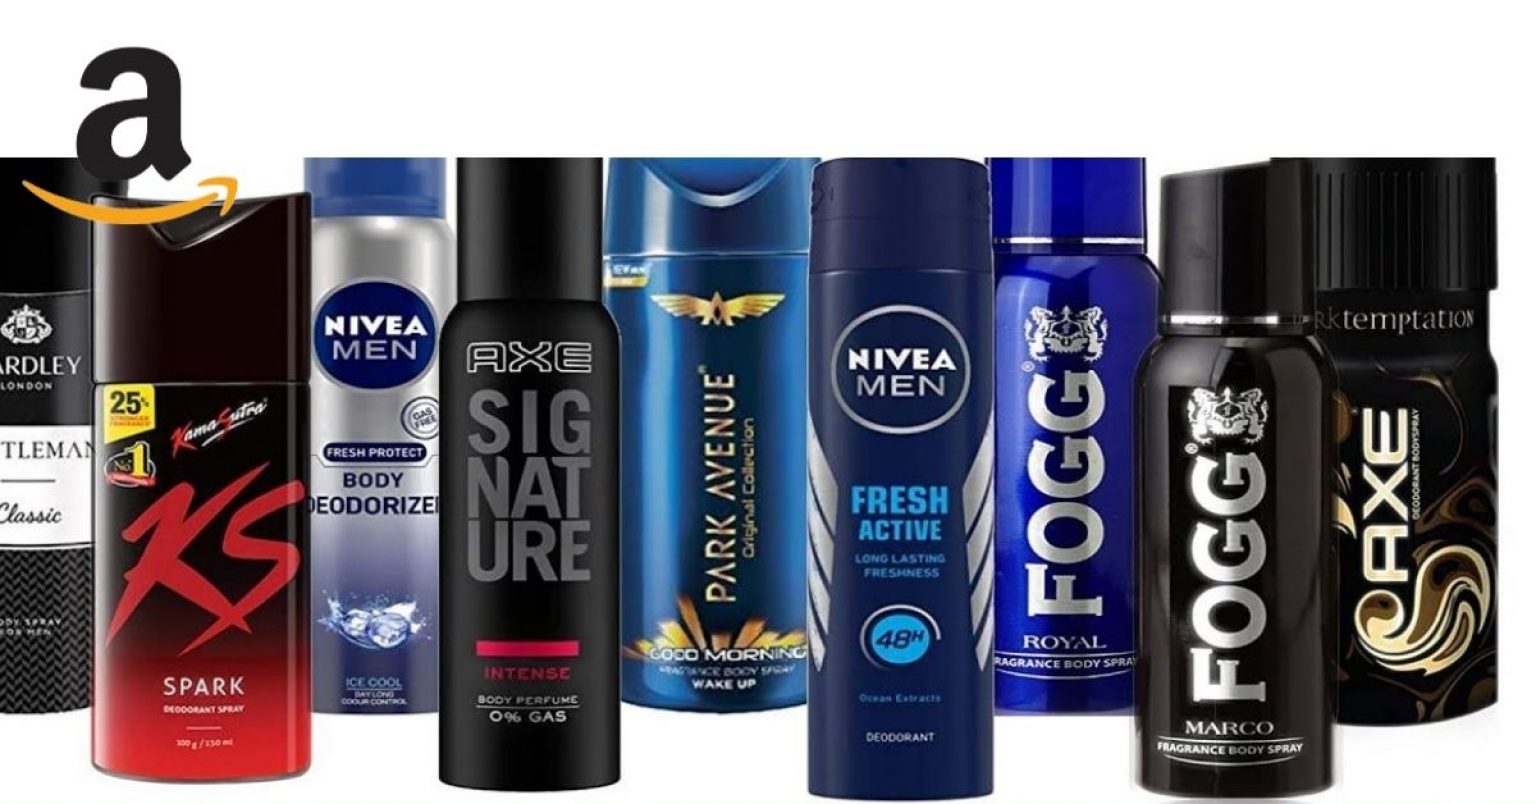 Top 10 Best Deodorant For Men Buy On Amazon